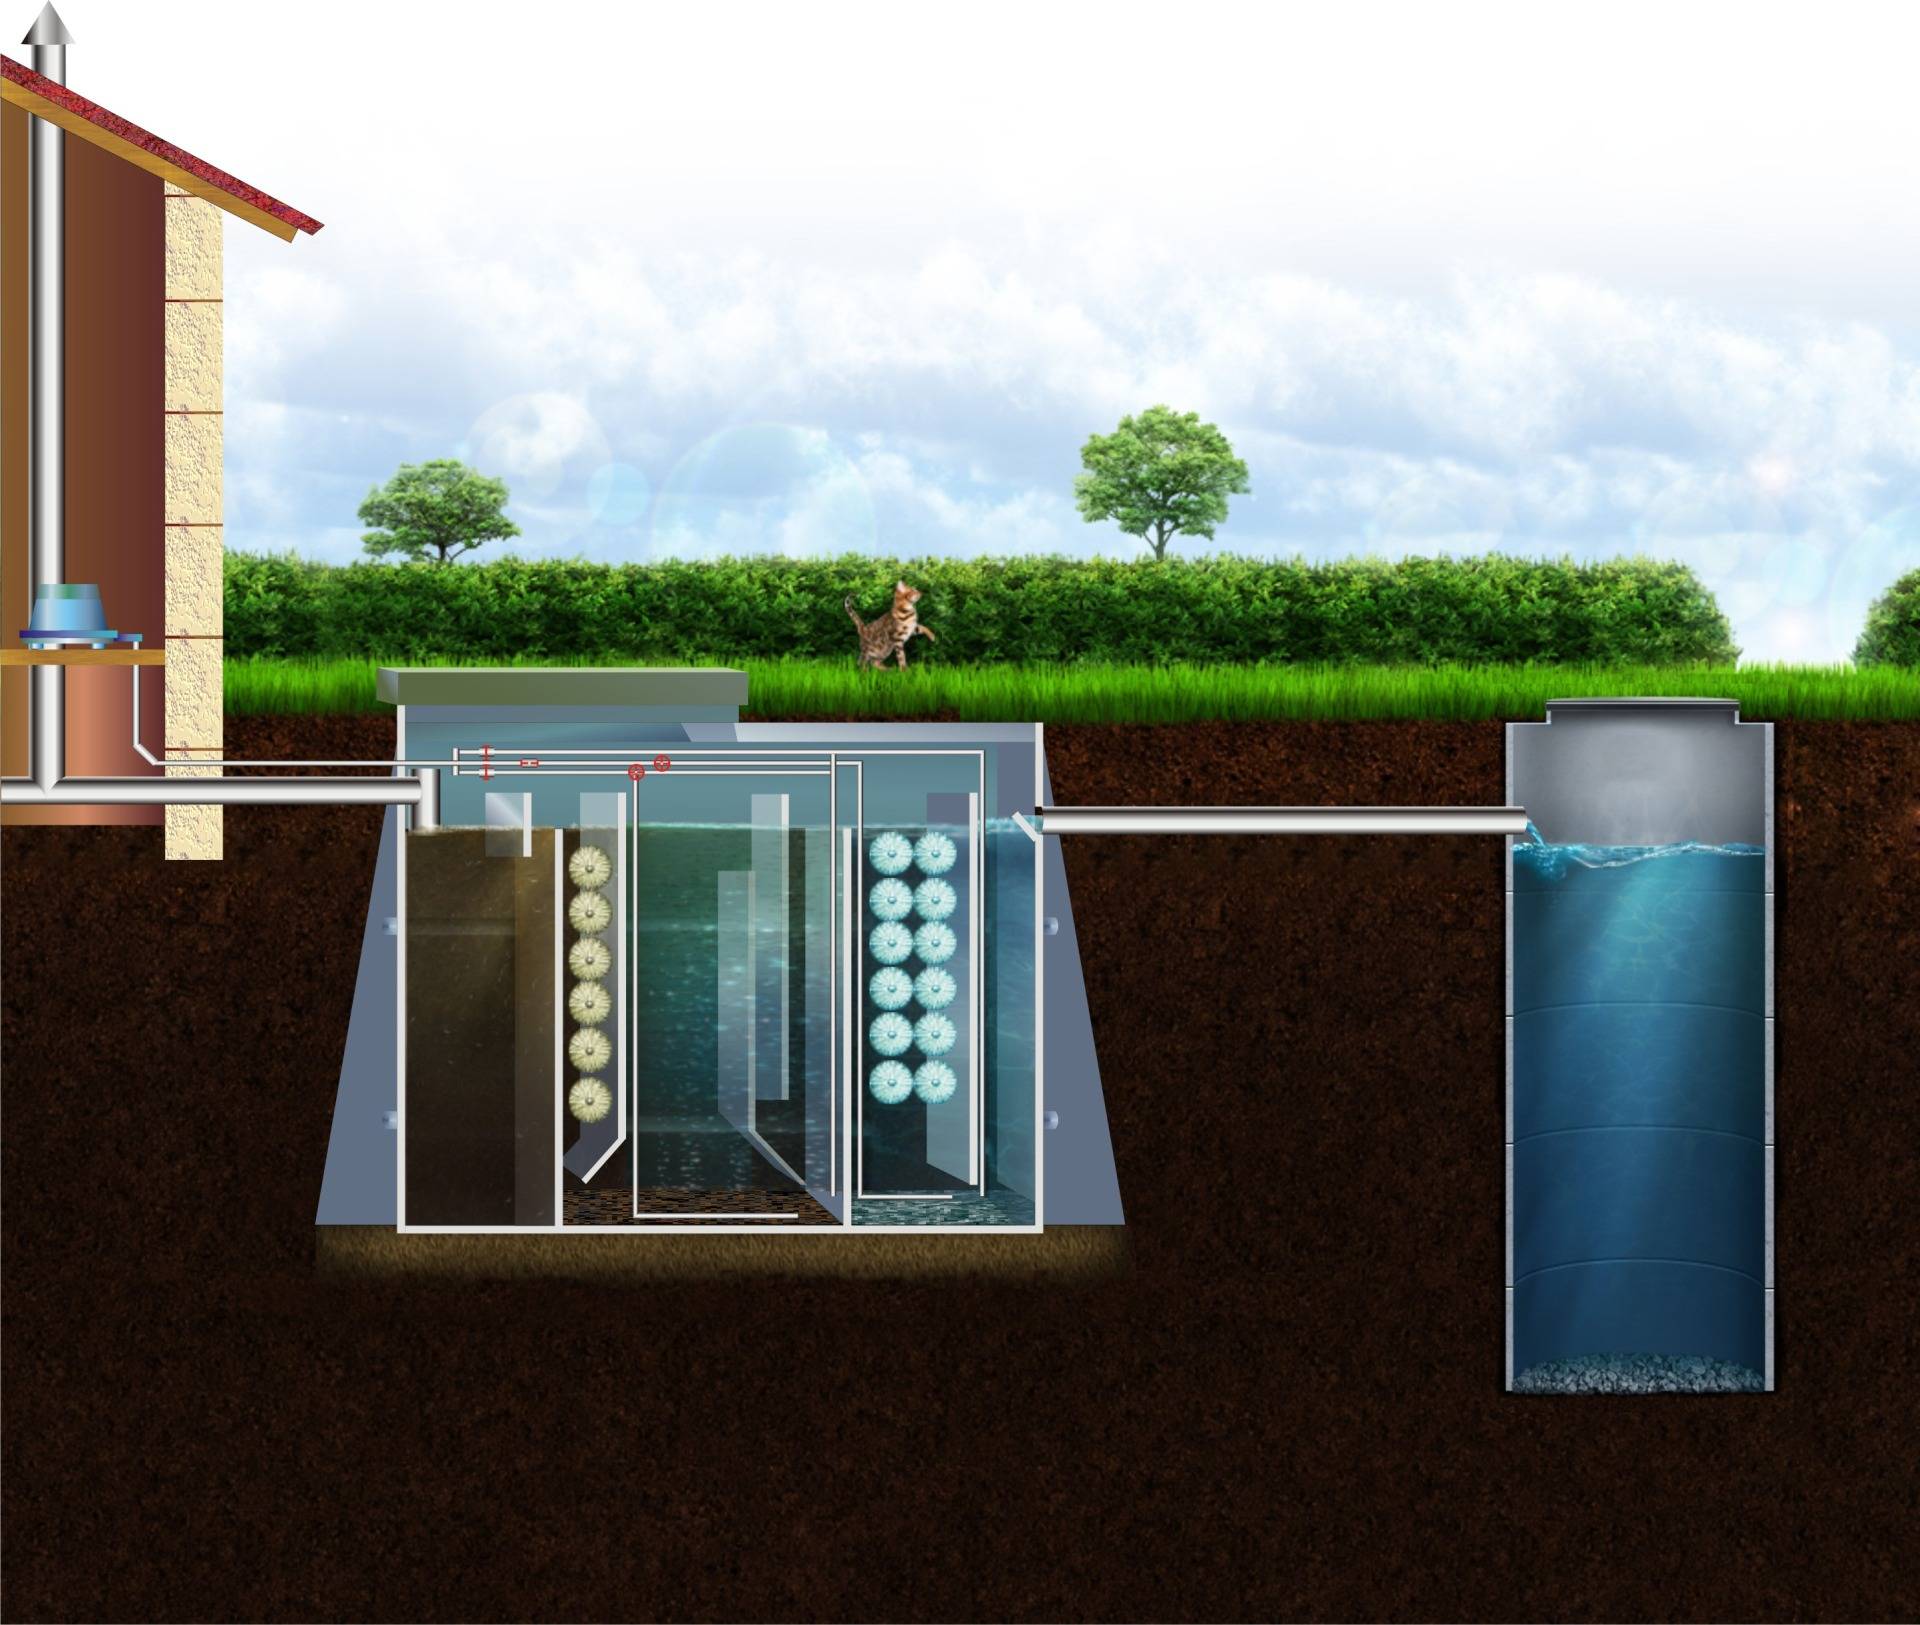 Что лучше для установки в загородном доме септик или автономная канализация?